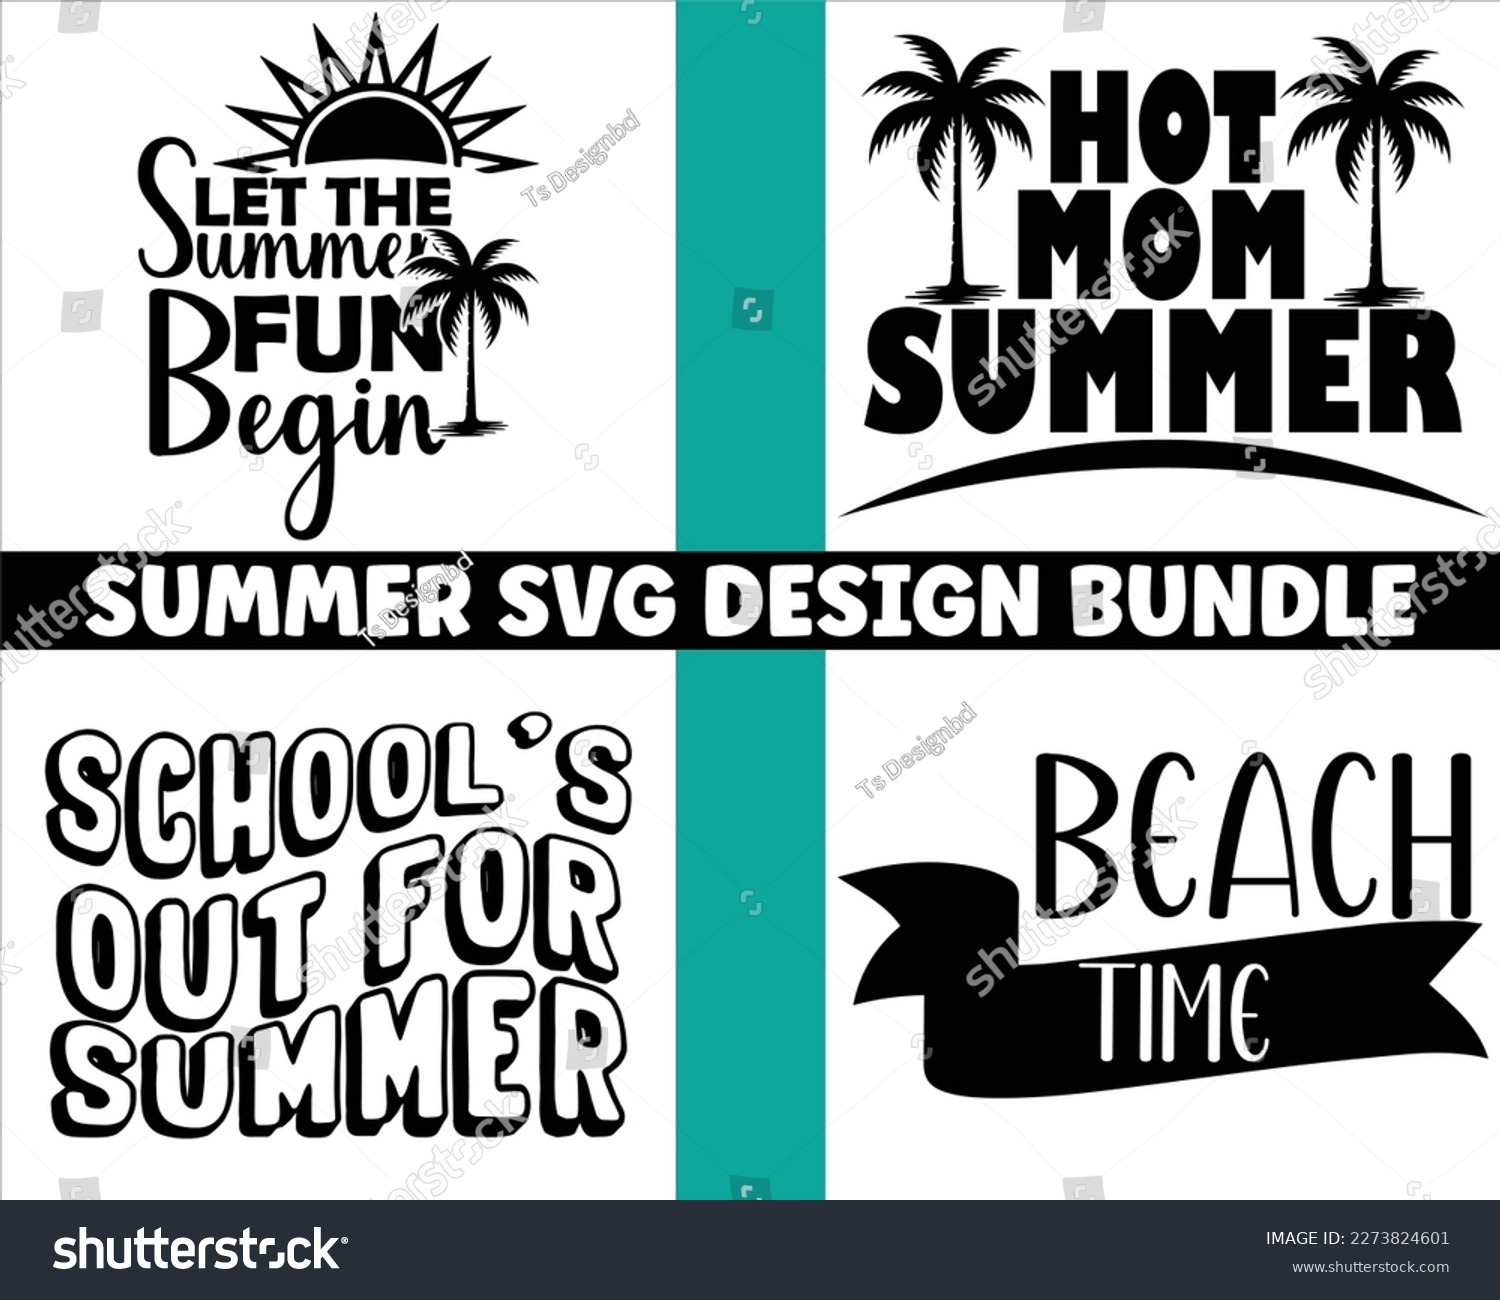 SVG of summer SVG design bundle Cut Files,Summer Beach Bundle SVG,Summer Quotes SVG Designs Bundle,Funny Beach Quotes Svg,Hello Summer quotes t shirt designs bundle, Quotes about Summer,beach cut files svg